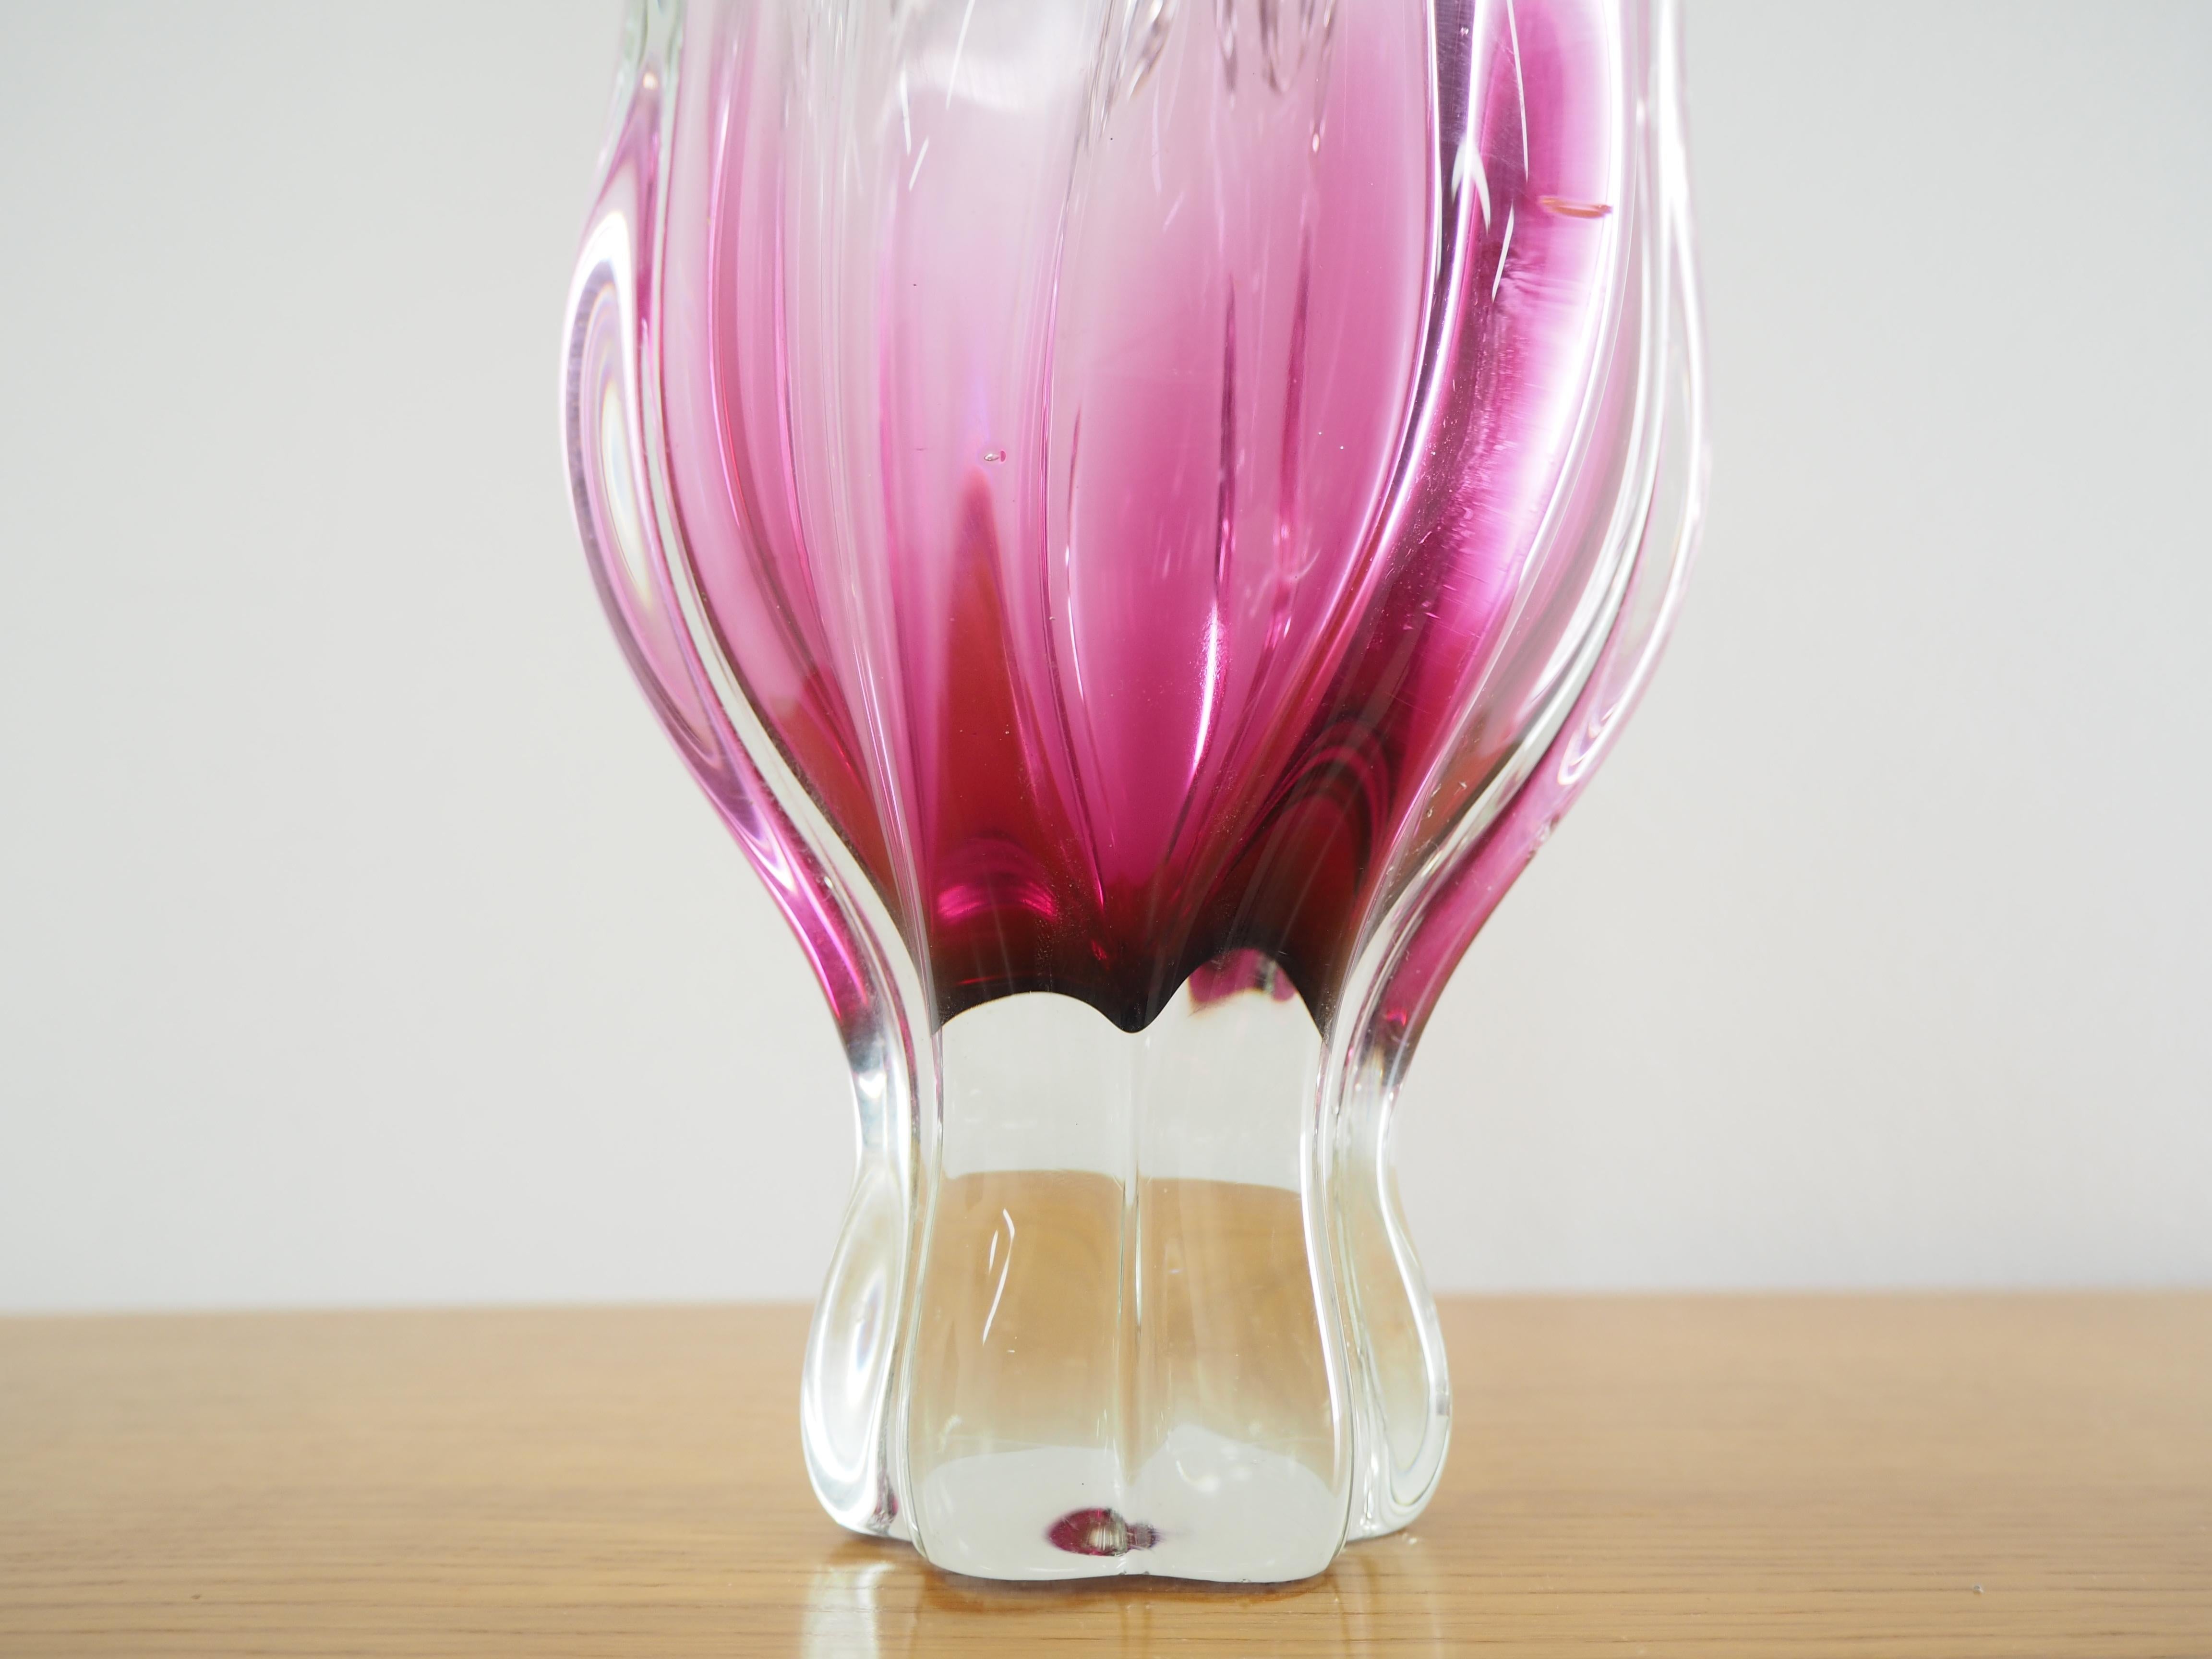 Mid-20th Century Art Glass Vase by Josef Hospodka for Chribska Glassworks, 1960s